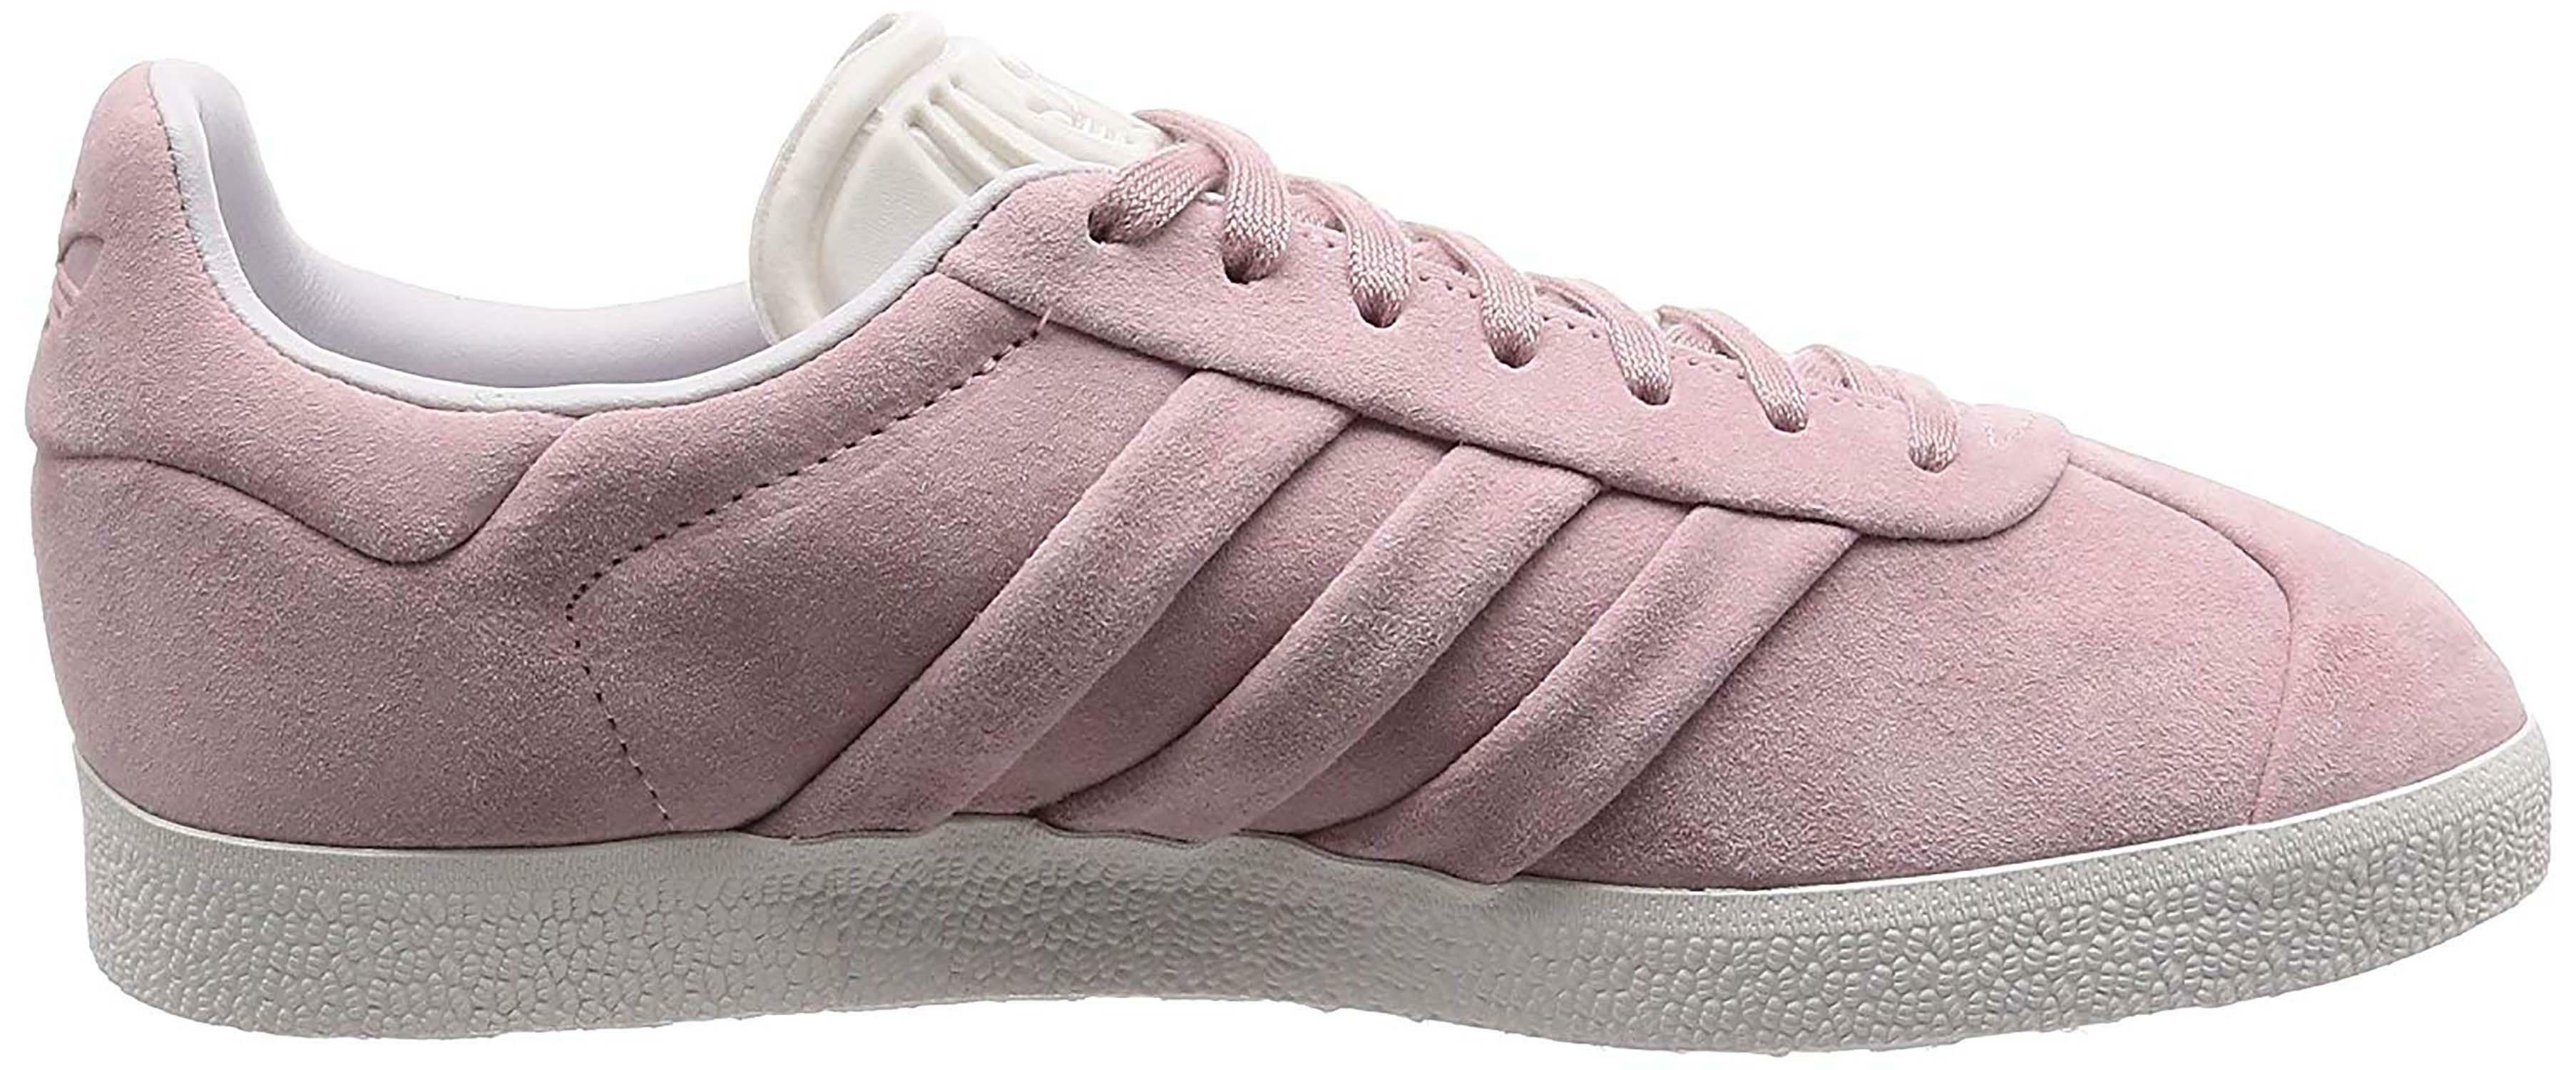 adidas adidas gazelle stitch and turn scarpe sportive donna rosa bb6708